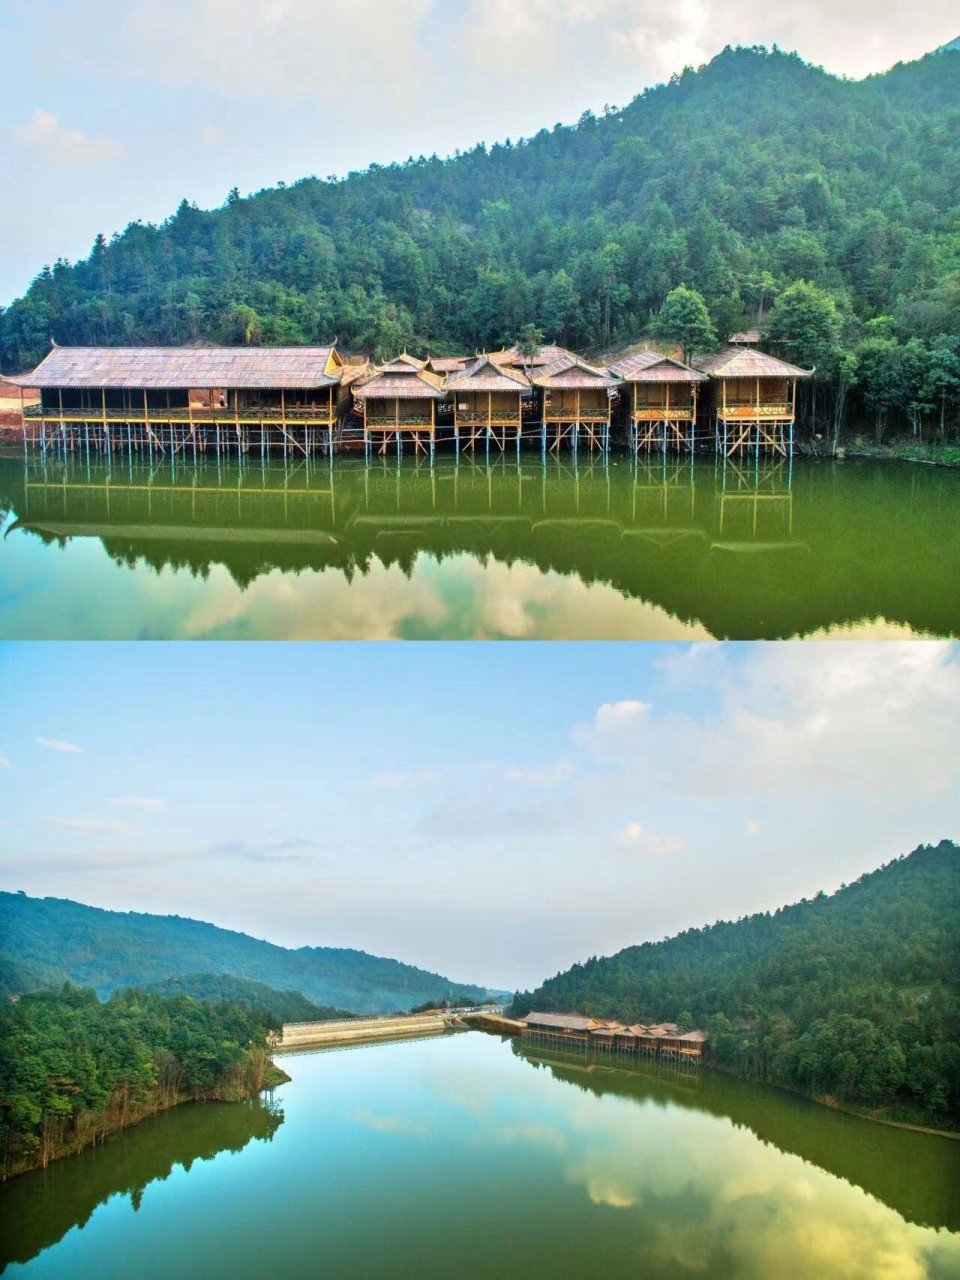 韩山风景区门票图片